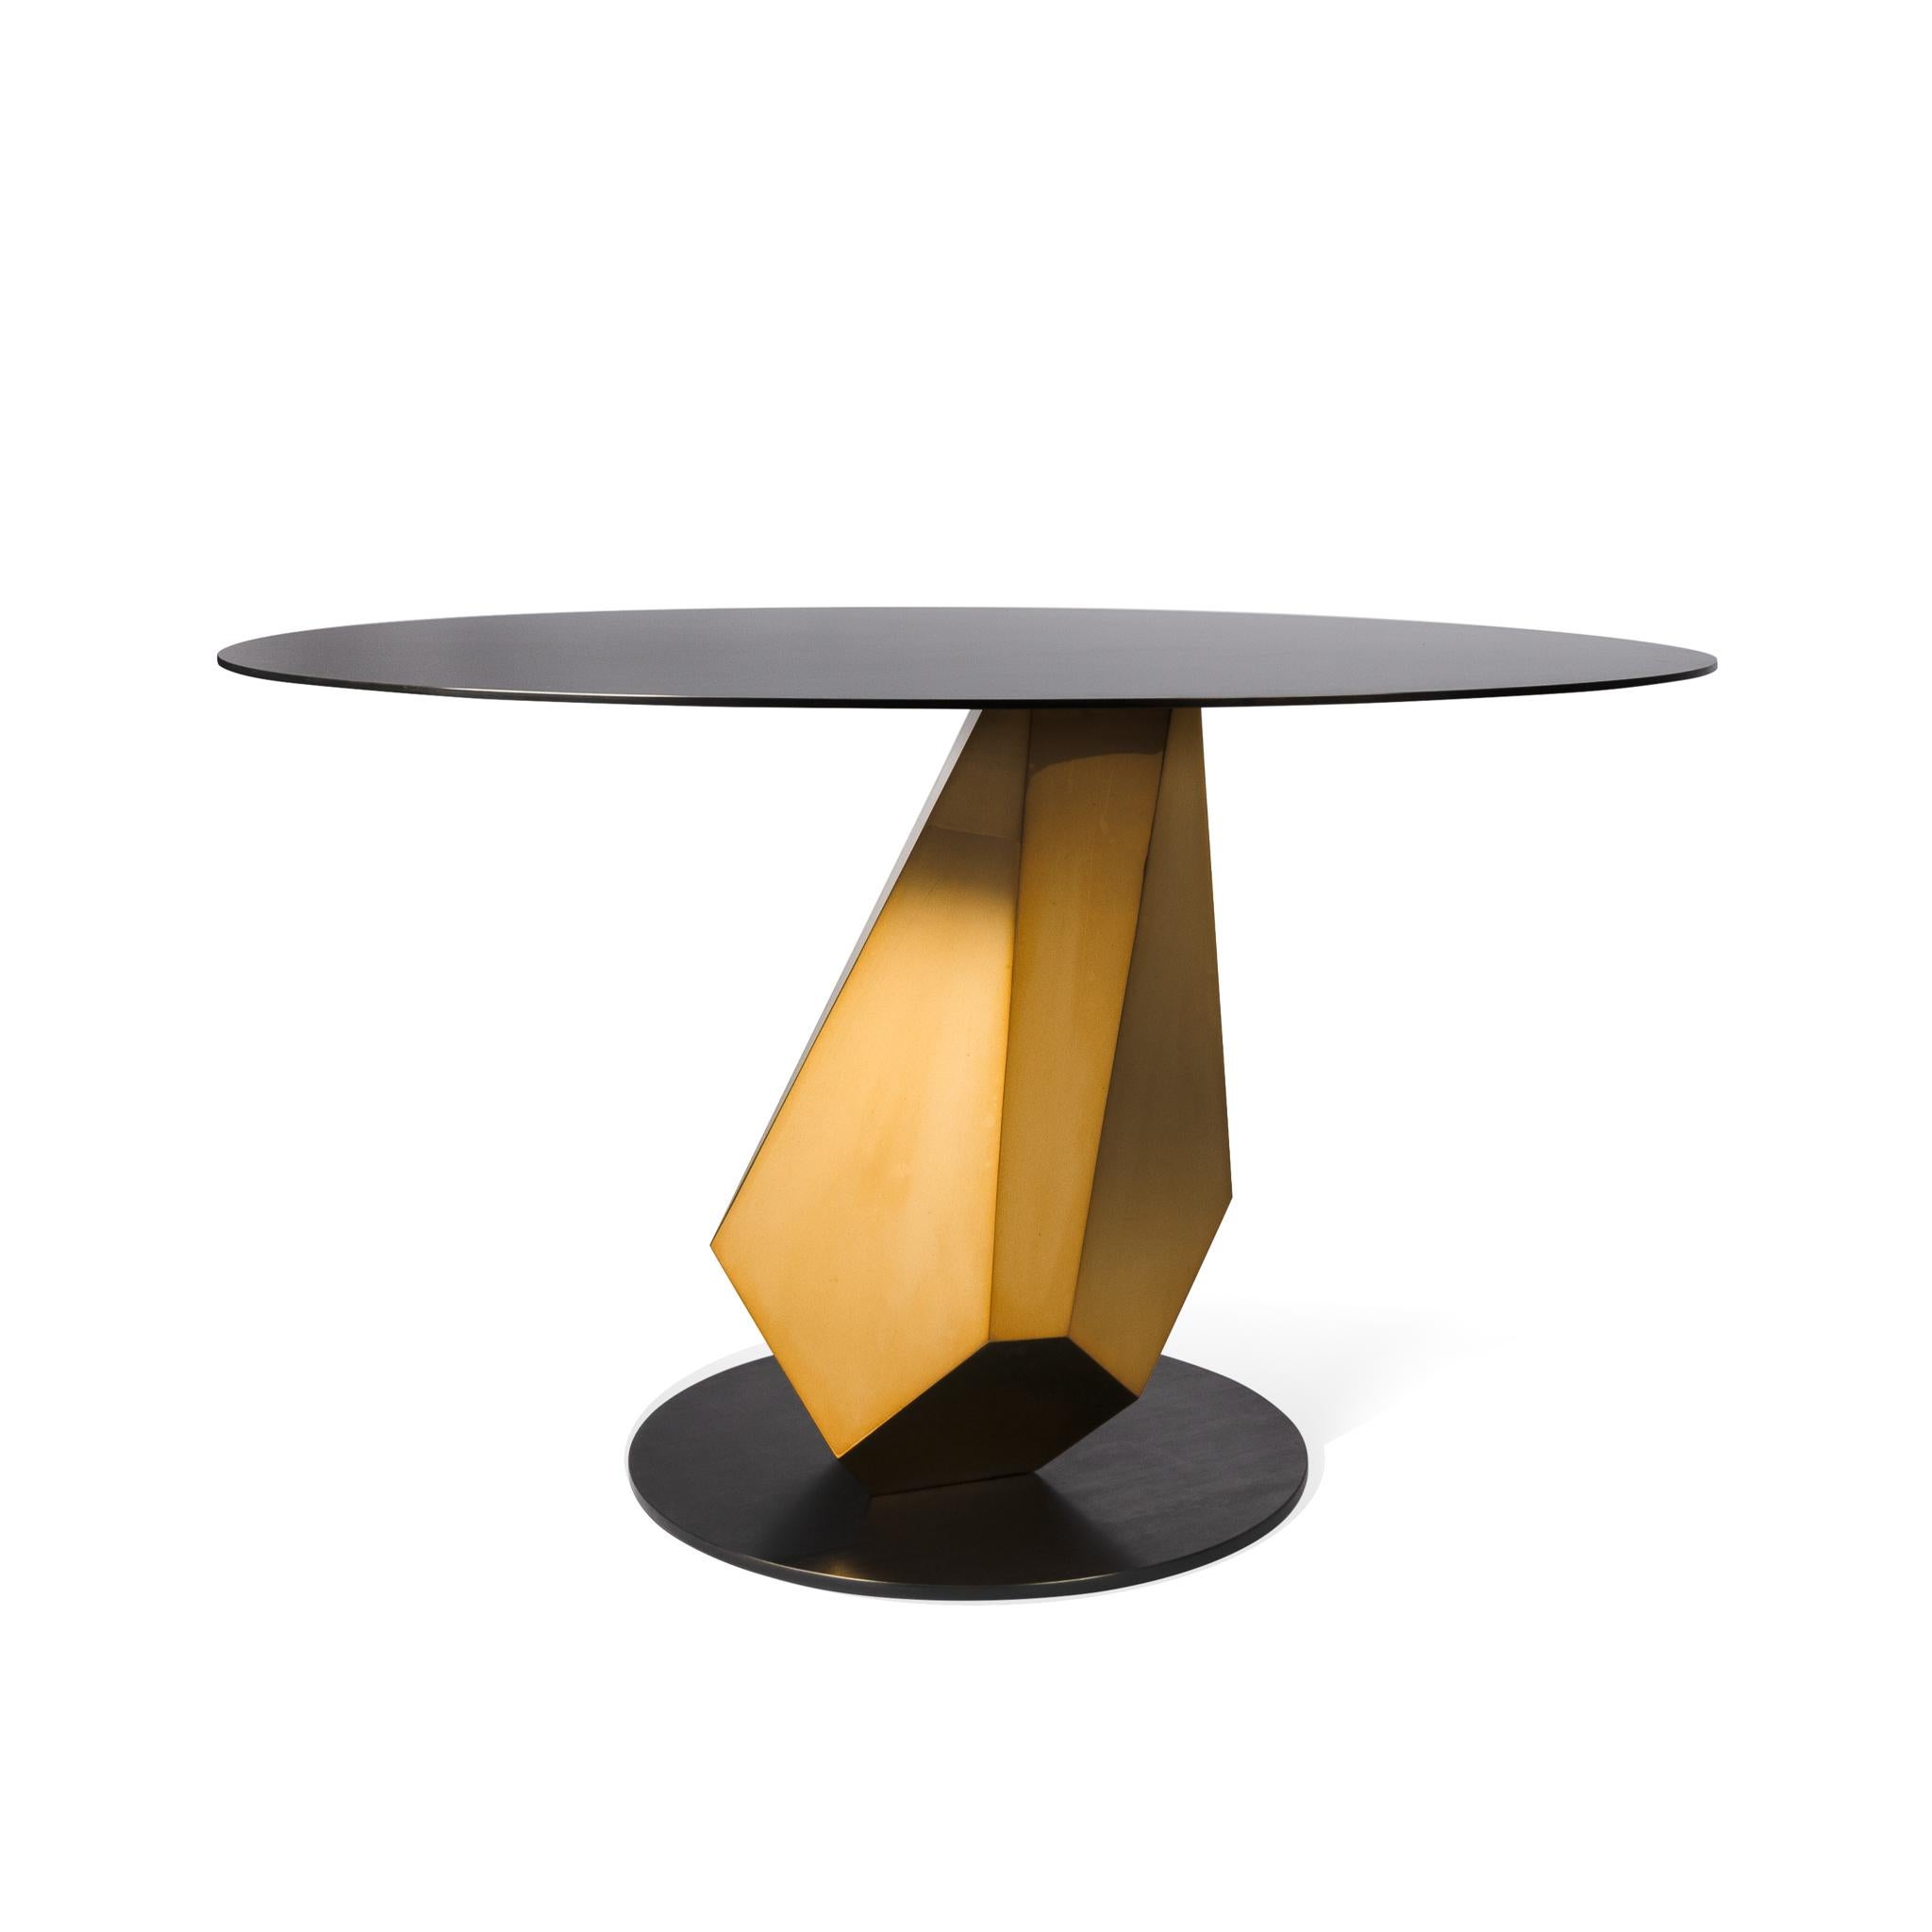 Derzeit 1 auf Lager, versandfertig in 2-3 Tagen 

Der Tisch Madison ist ein opulentes Möbelstück, das die Verbindung von Funktionalität und Skulptur veranschaulicht. Der Sockel erforscht das Gleichgewicht und die natürlichen geometrischen Formen,